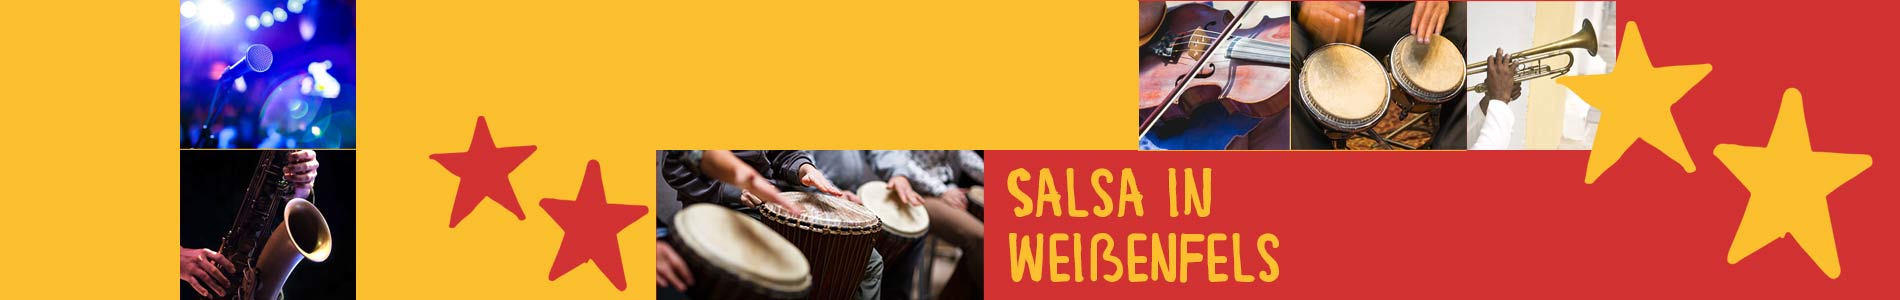 Salsa in Weißenfels – Salsa lernen und tanzen, Tanzkurse, Partys, Veranstaltungen